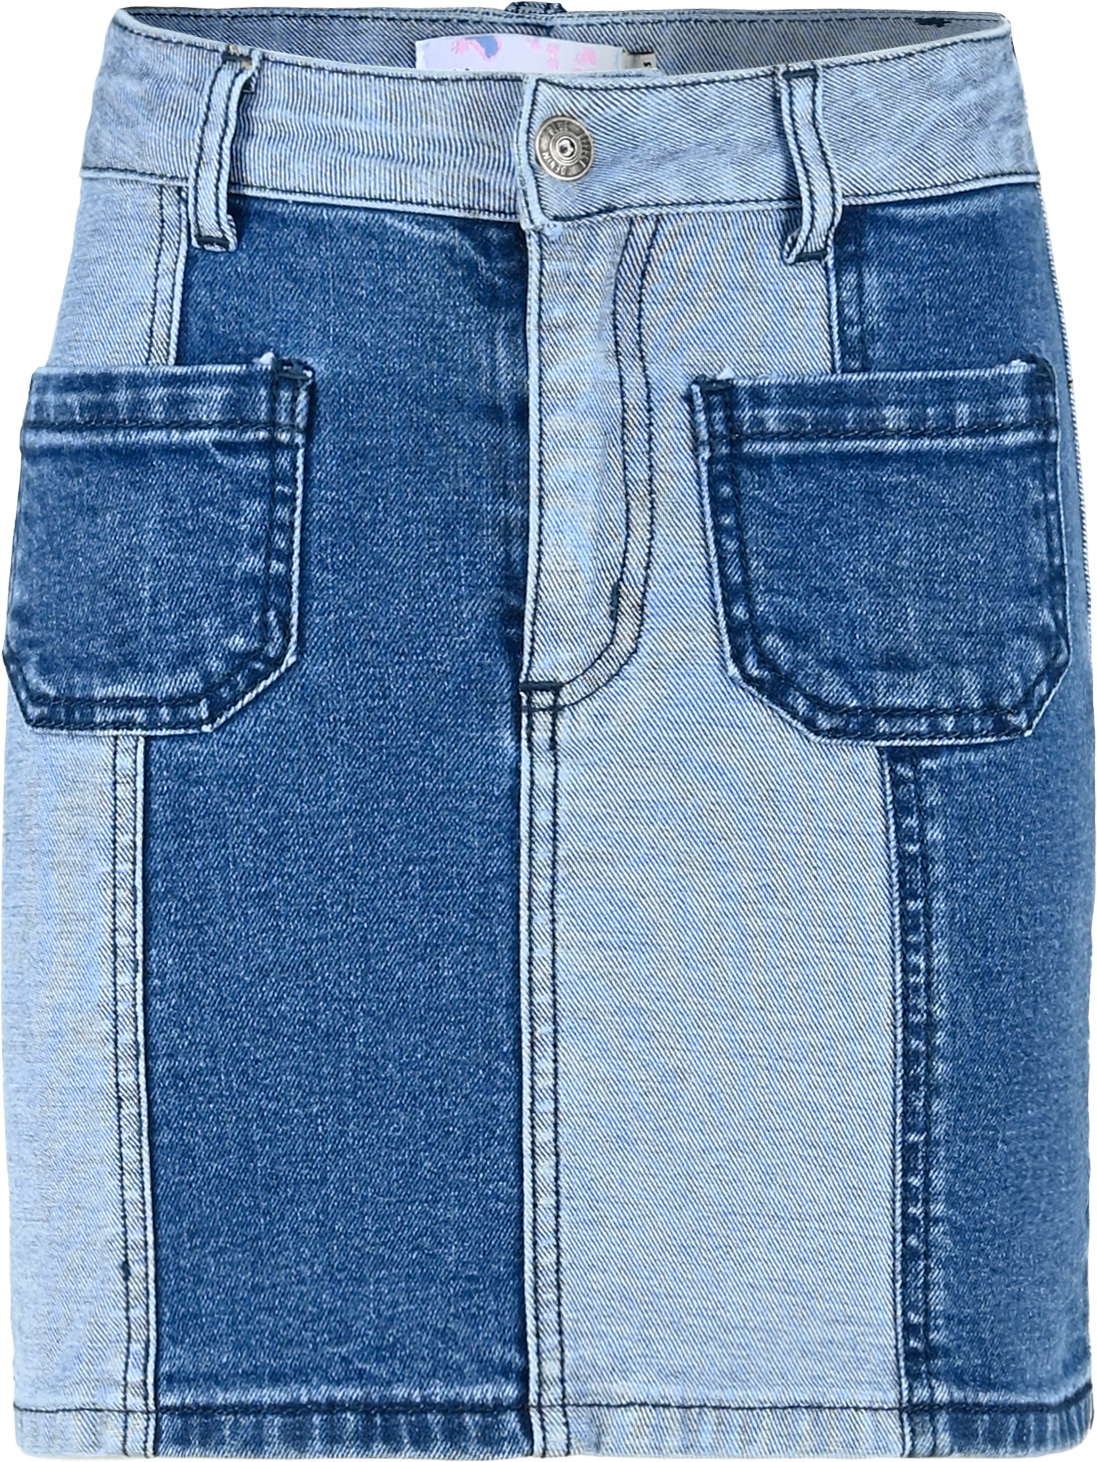 3311-Girls High-Waist Skirt verfügbar in Normal